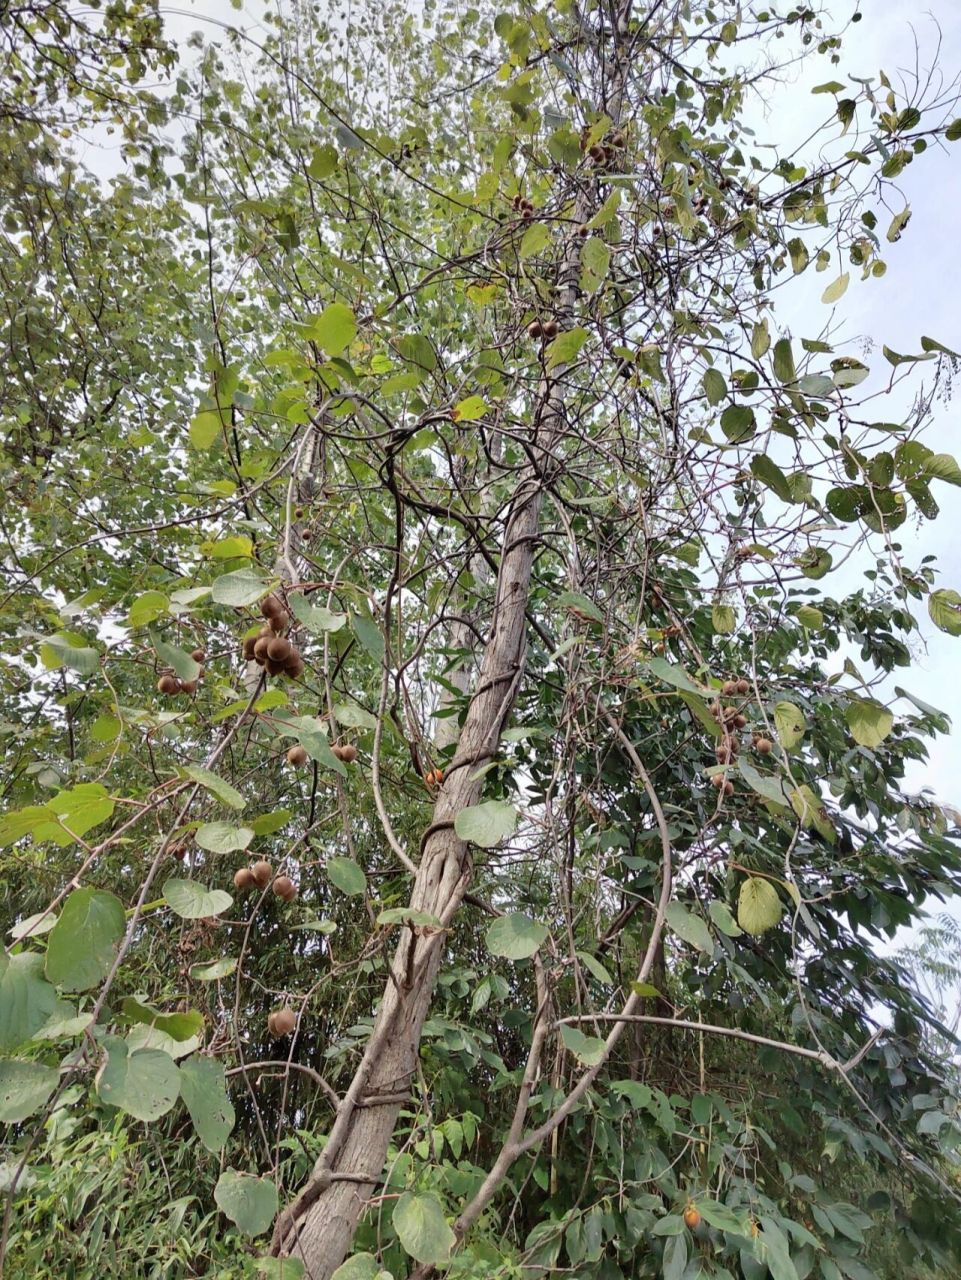 来说说你见过的野生猕猴桃树09 来自大自然的馈赠 野生猕猴桃树在